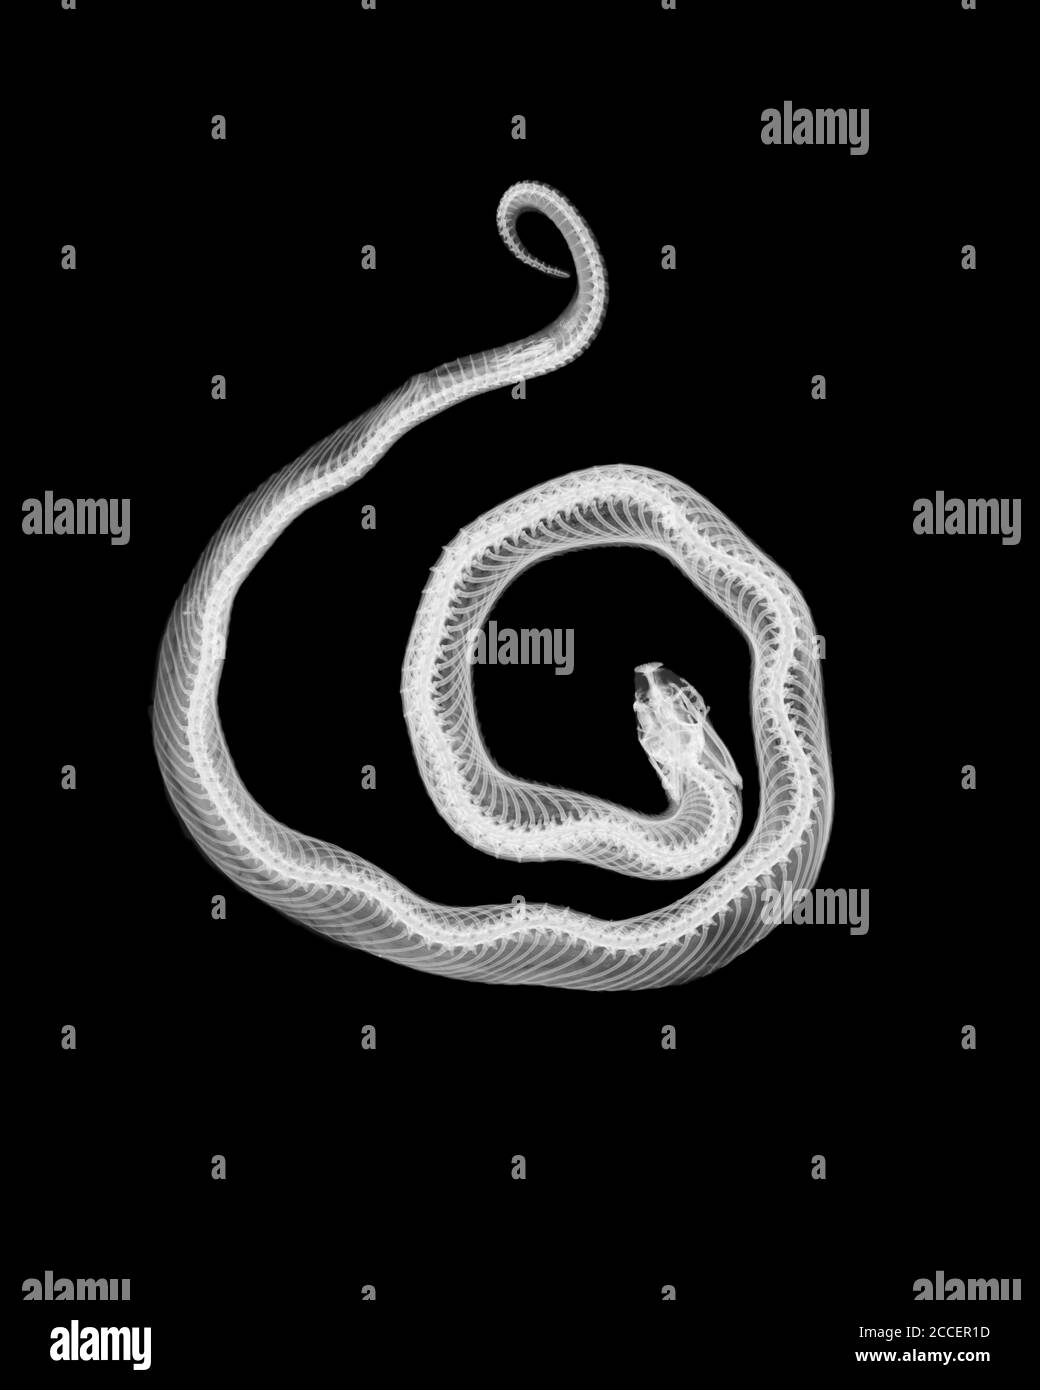 Corn snake , X-ray Stock Photo